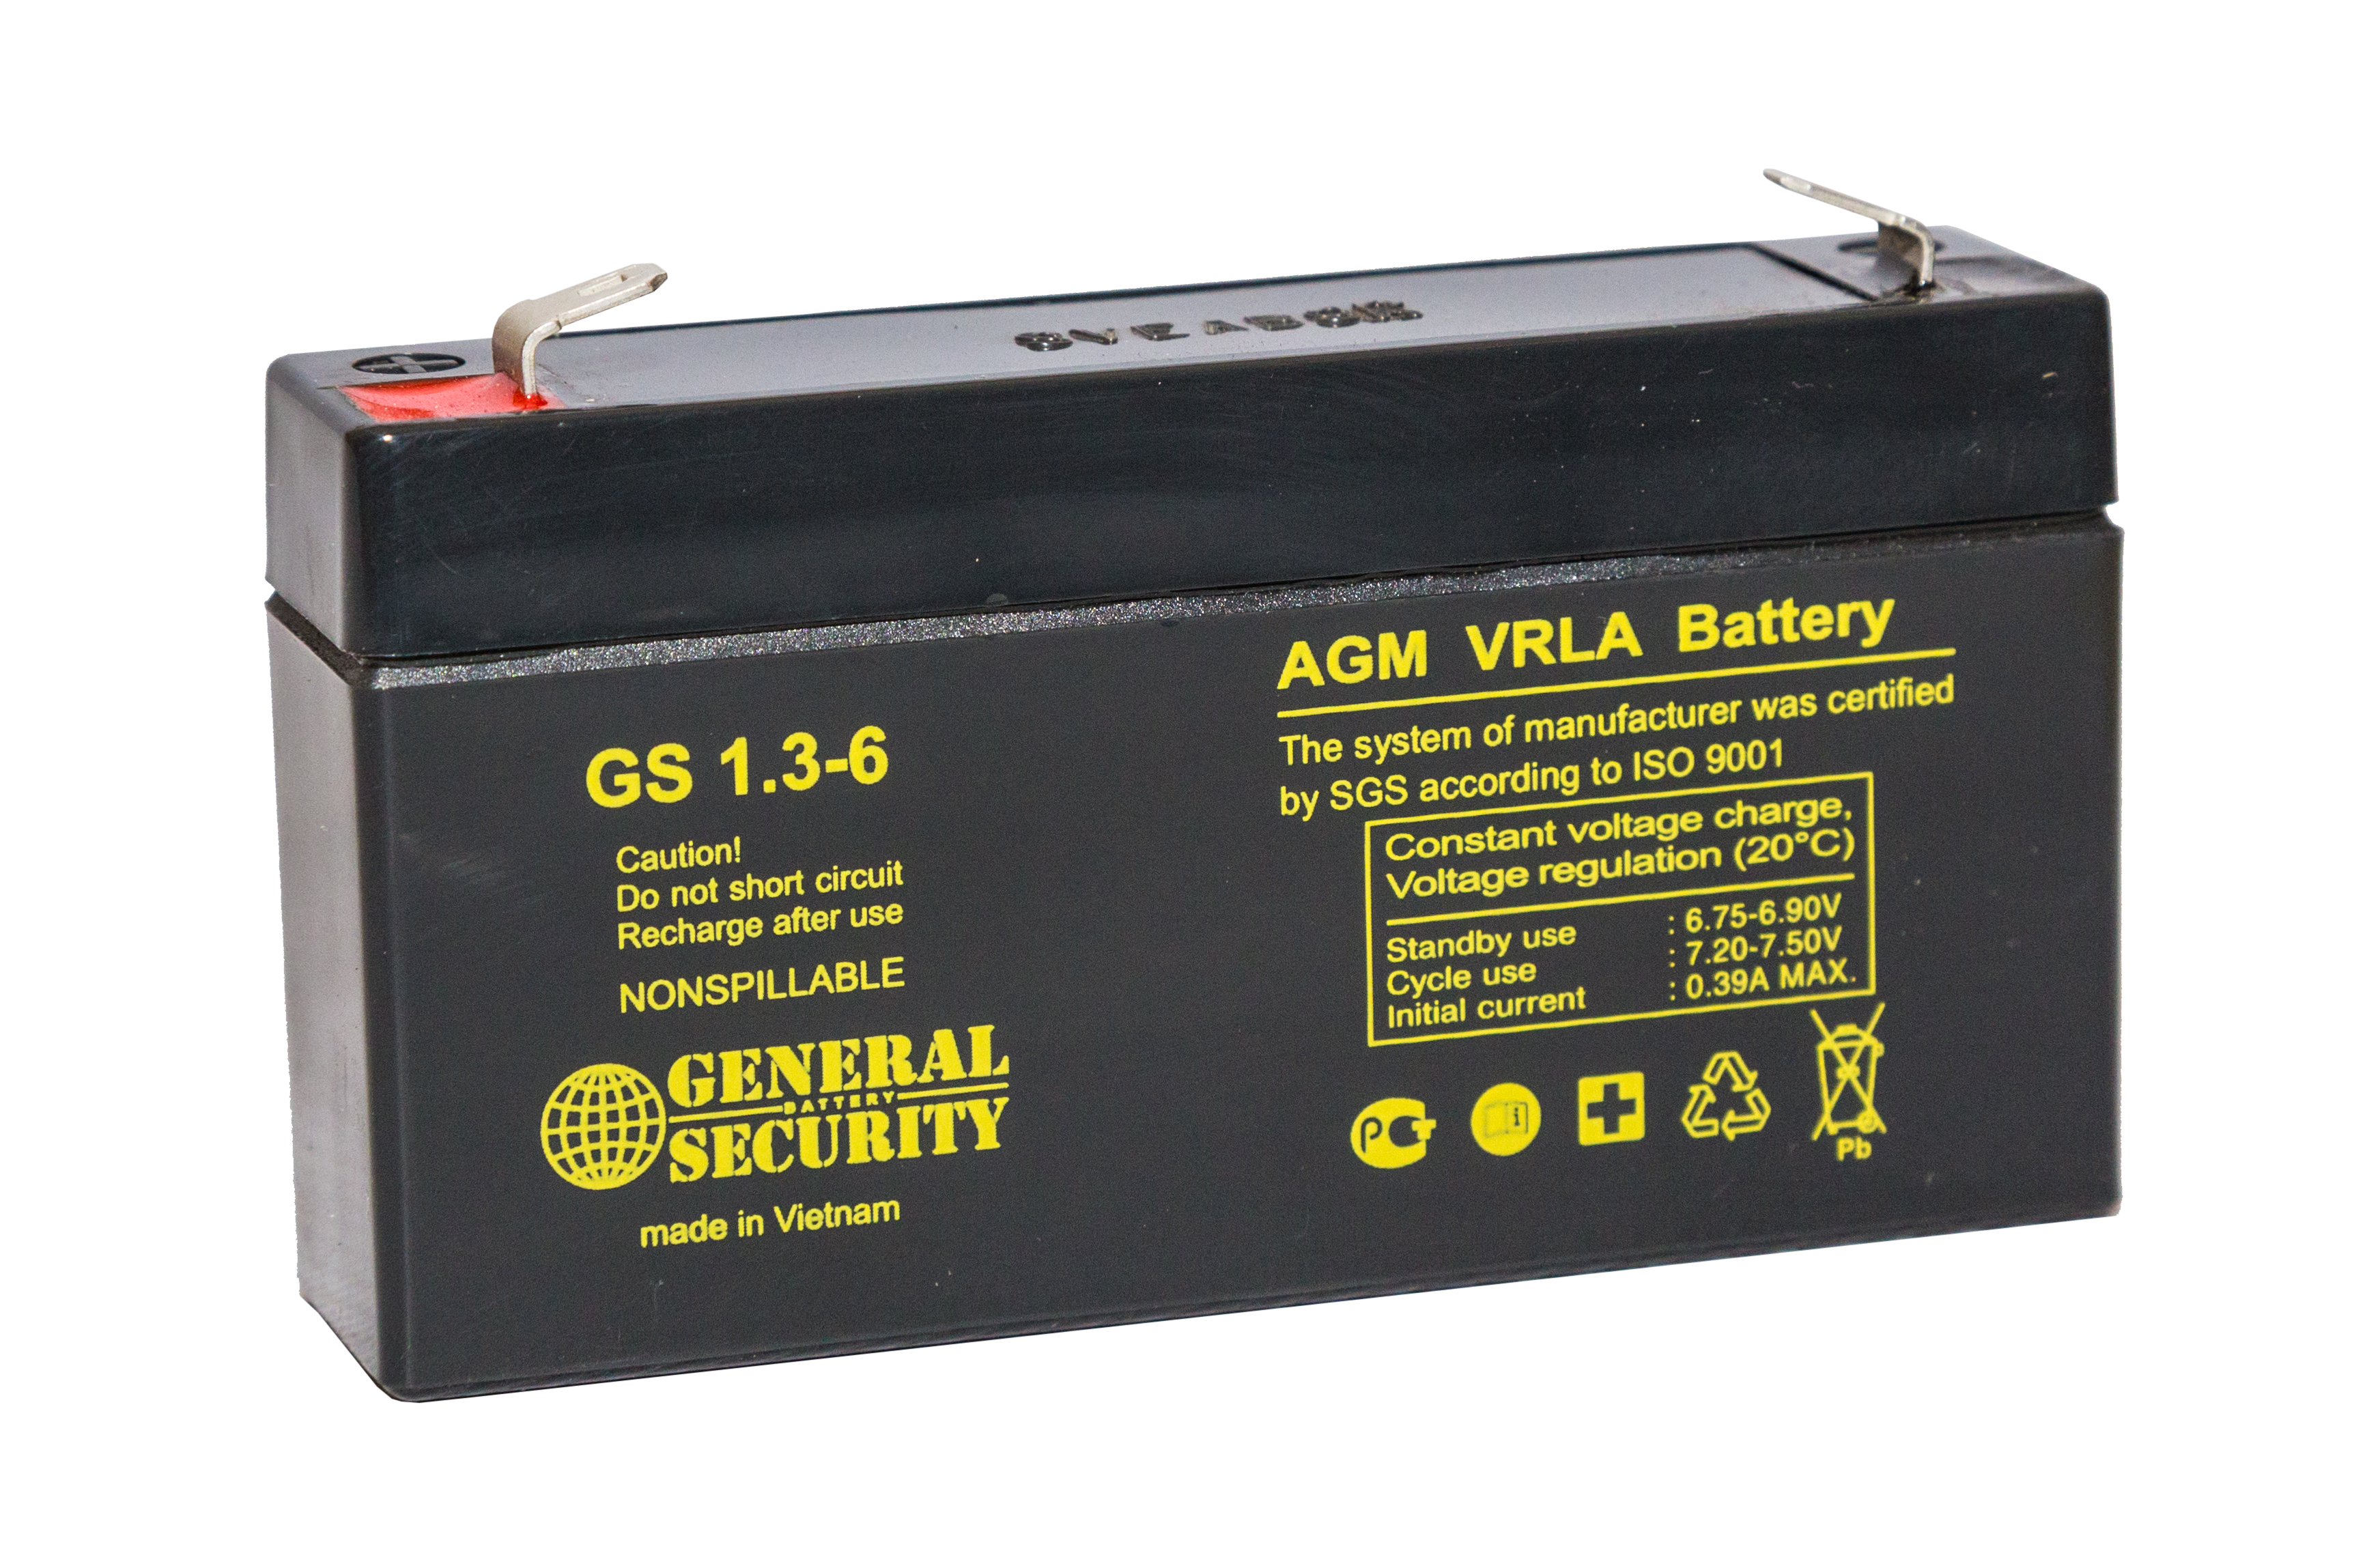 Аккумулятор 12v 1.2. Аккумулятор General Security GS 1.3-6. Аккумулятор для ИБП General Security GSL1.2-12. Аккумулятор General Security GSL 1,2-12 12v 1,2ah. Аккумулятор General Security GS 1.2-12.